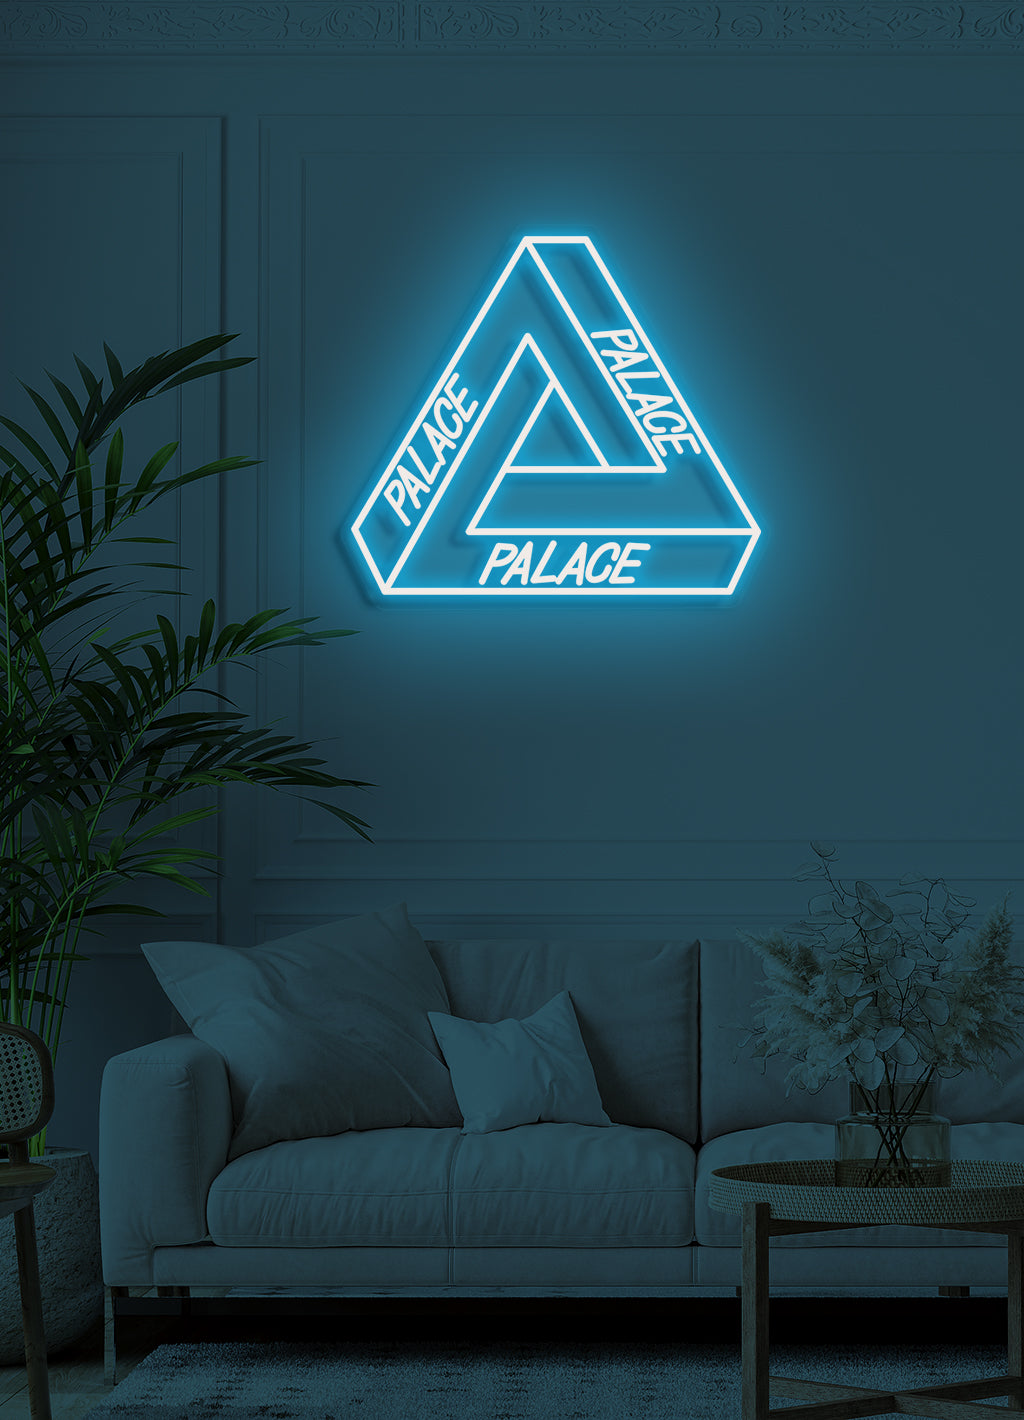 Palace - LED Neon skilt